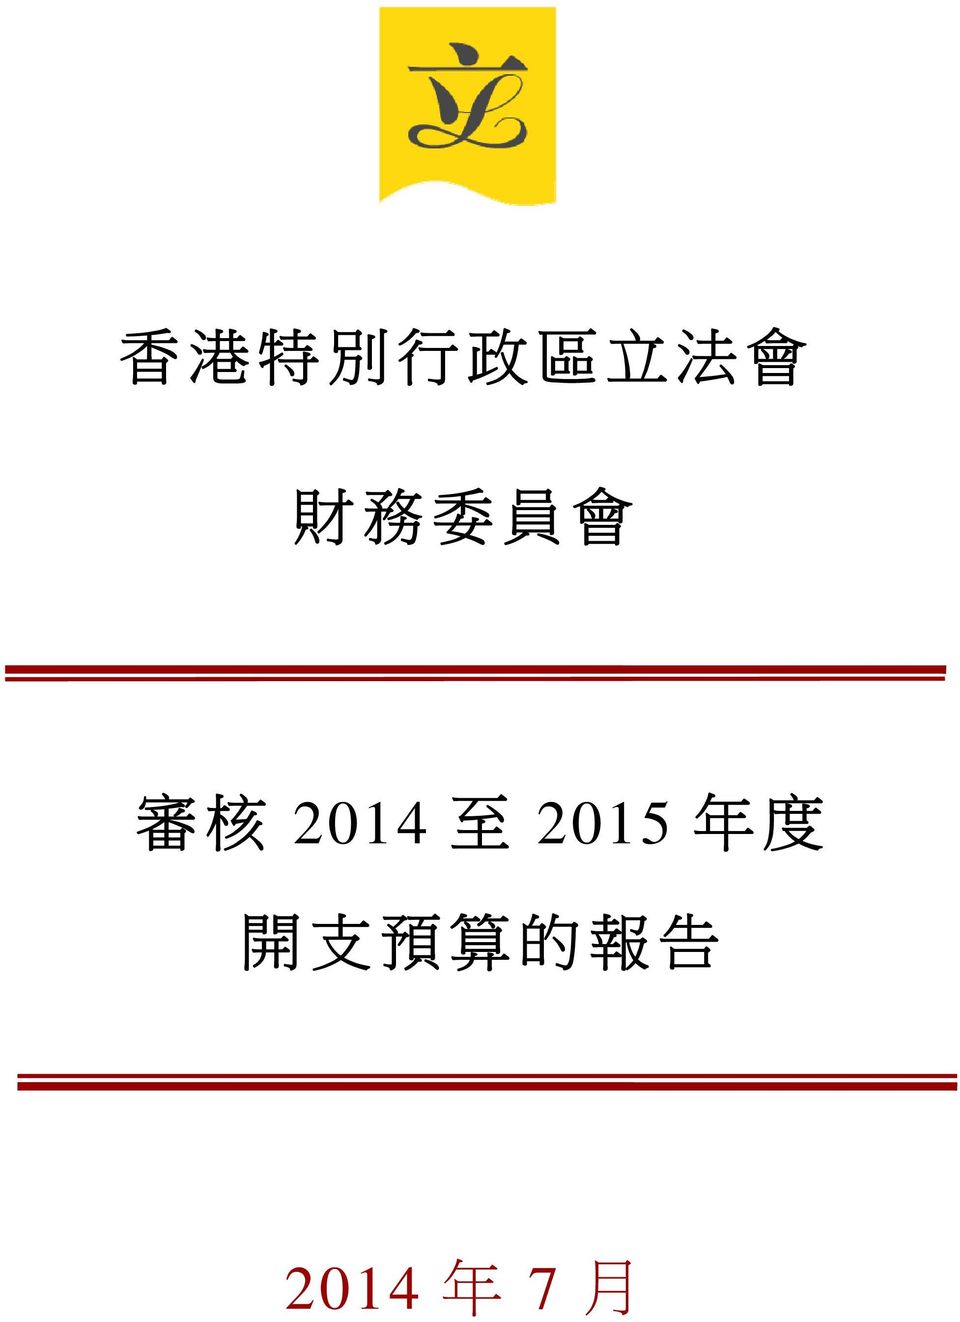 2014 至 2015 年 度 開